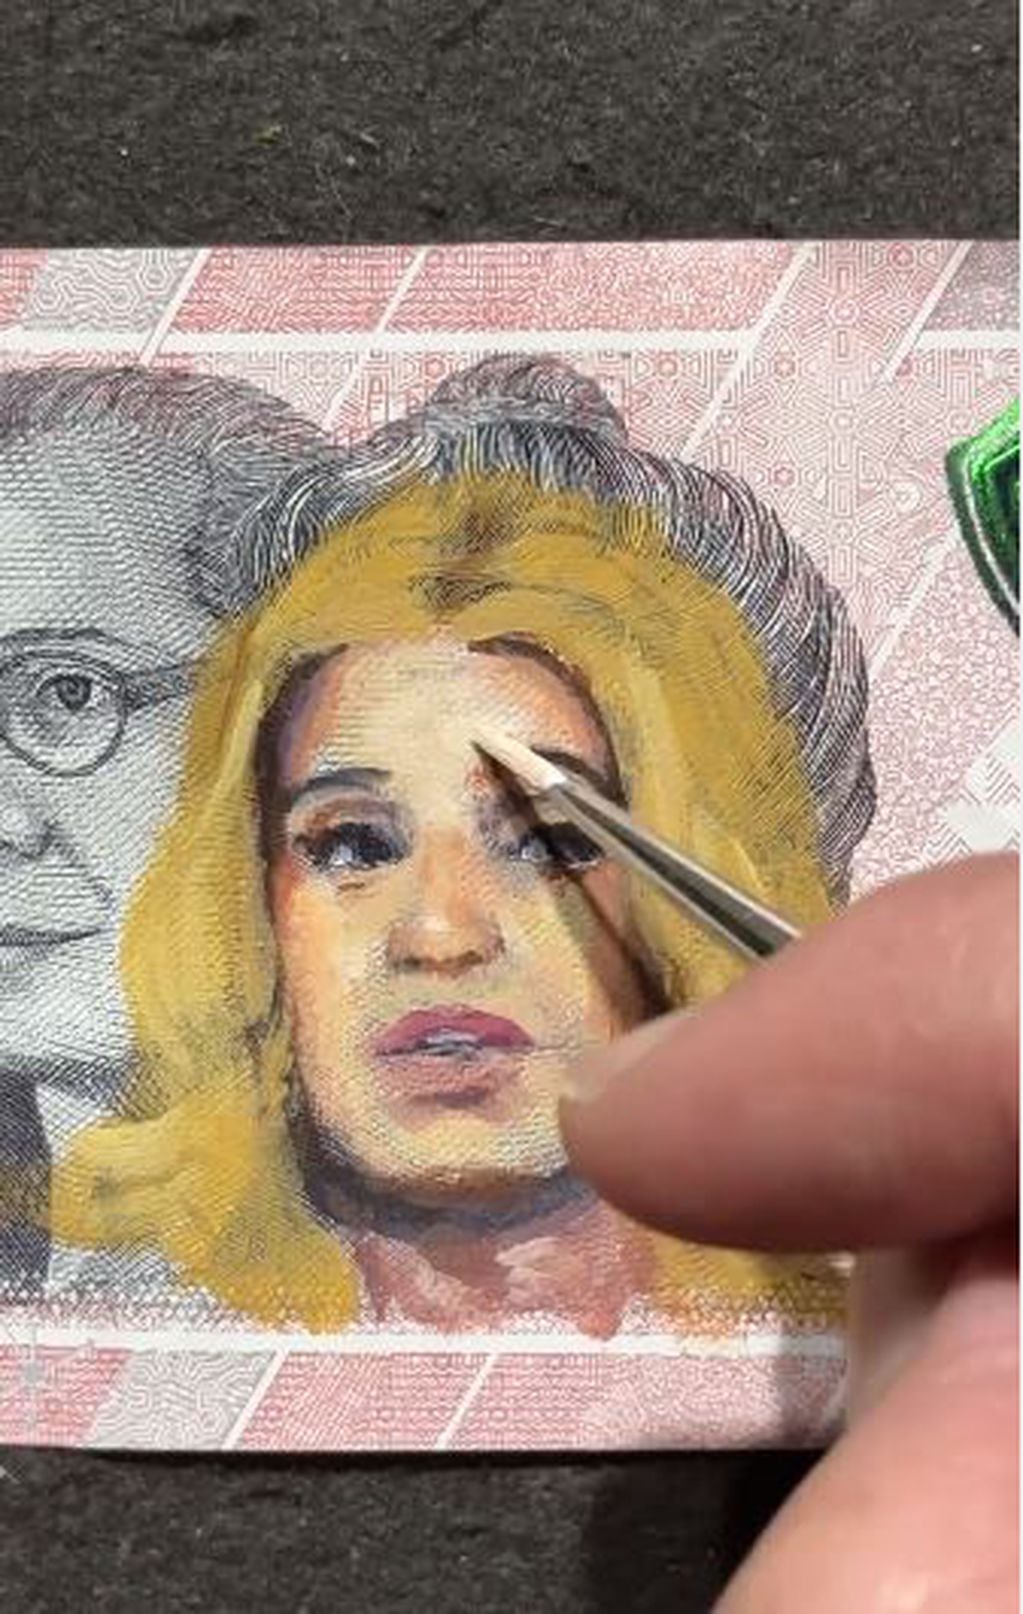 Un artista plástico pinta sobre billetes personajes icónicos de la historia y el entretenimiento